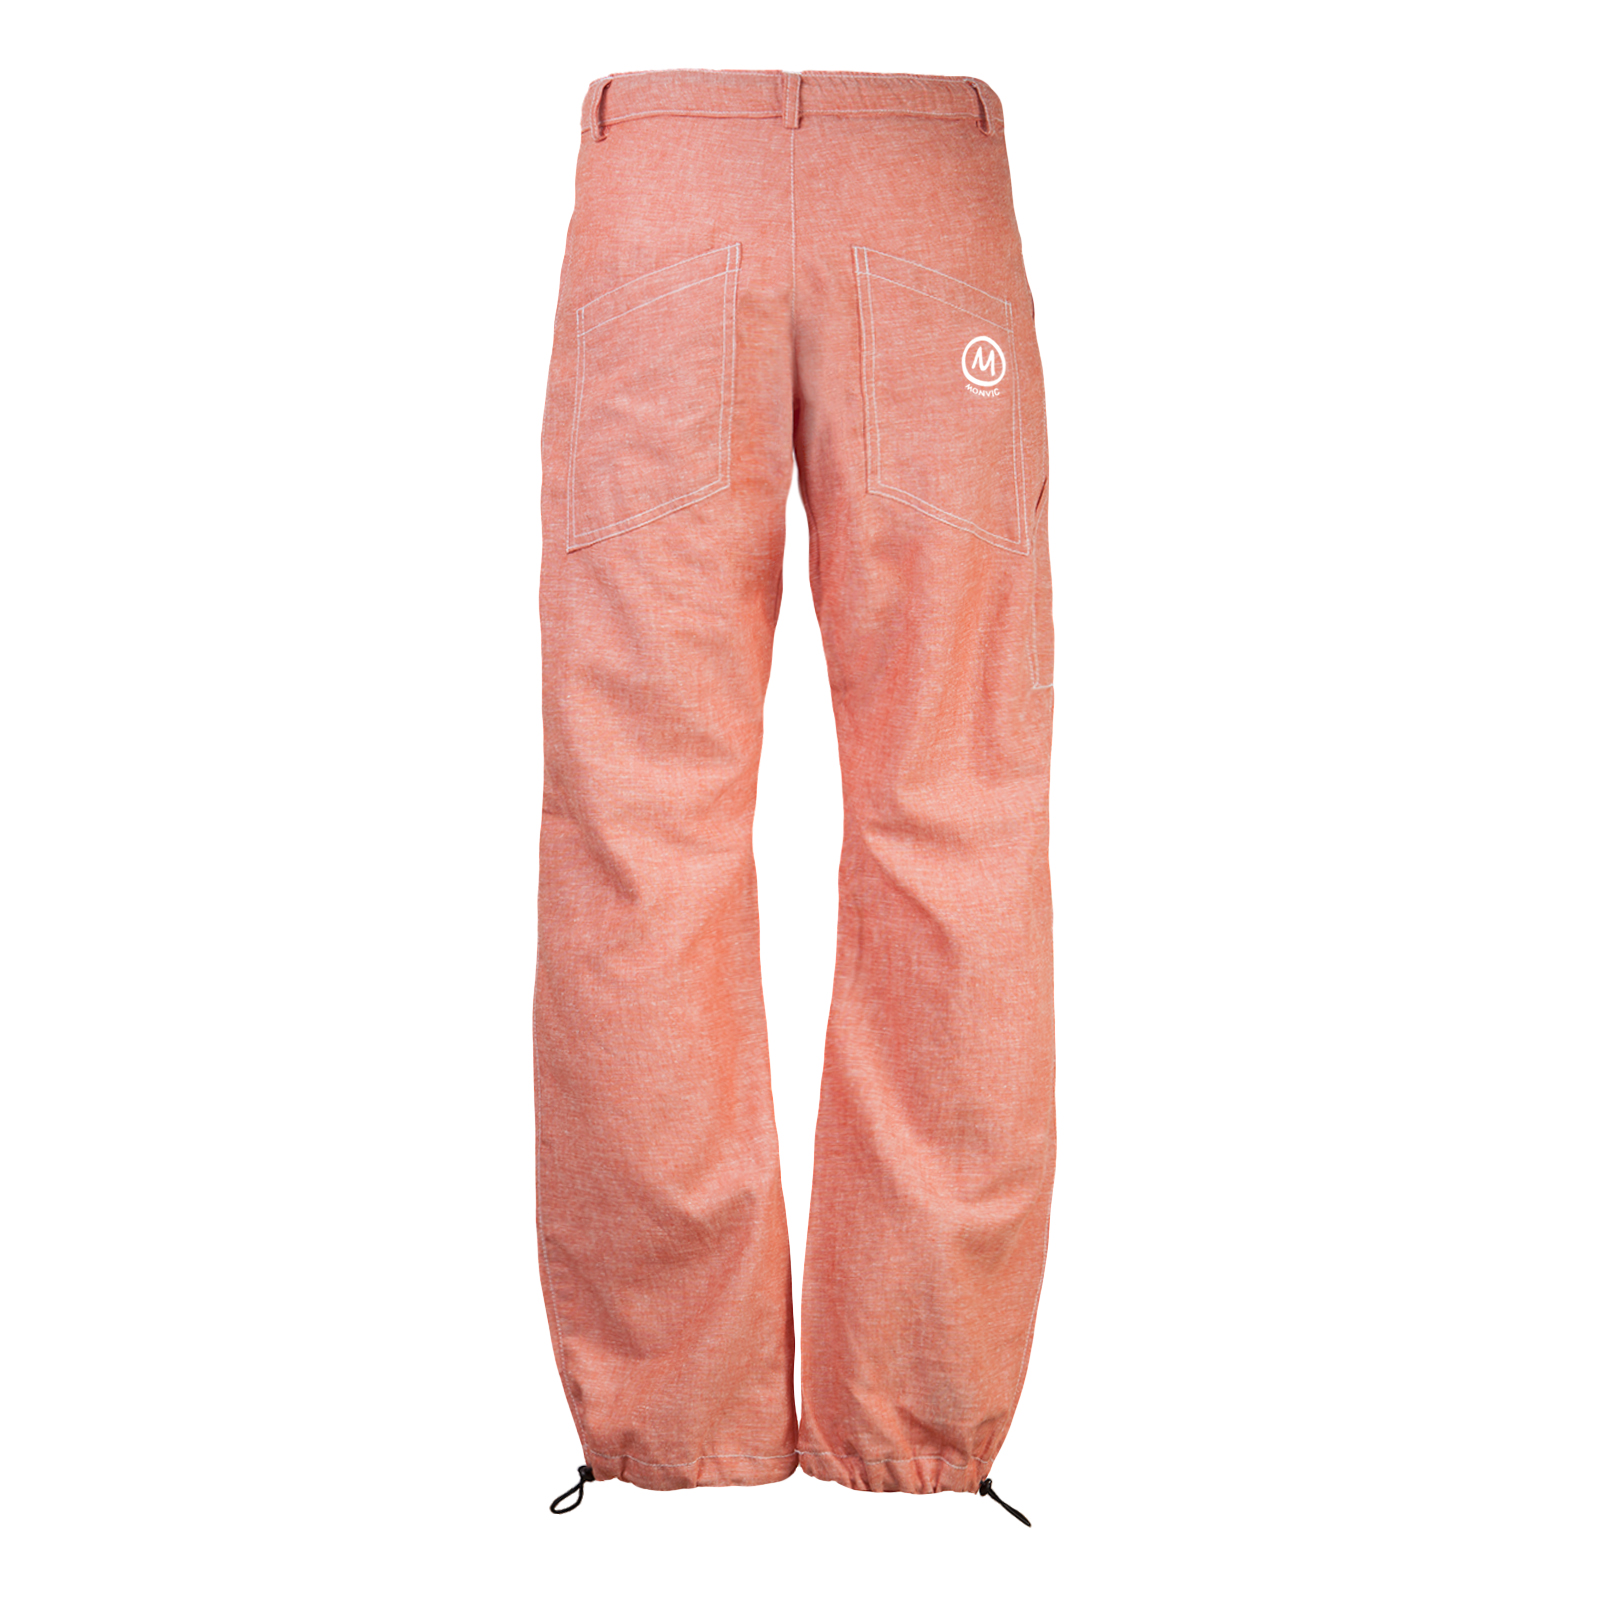 pantalone uomo di lino rosso chiaro per arrampicata, hiking, sport - BILLY 2 Monvic